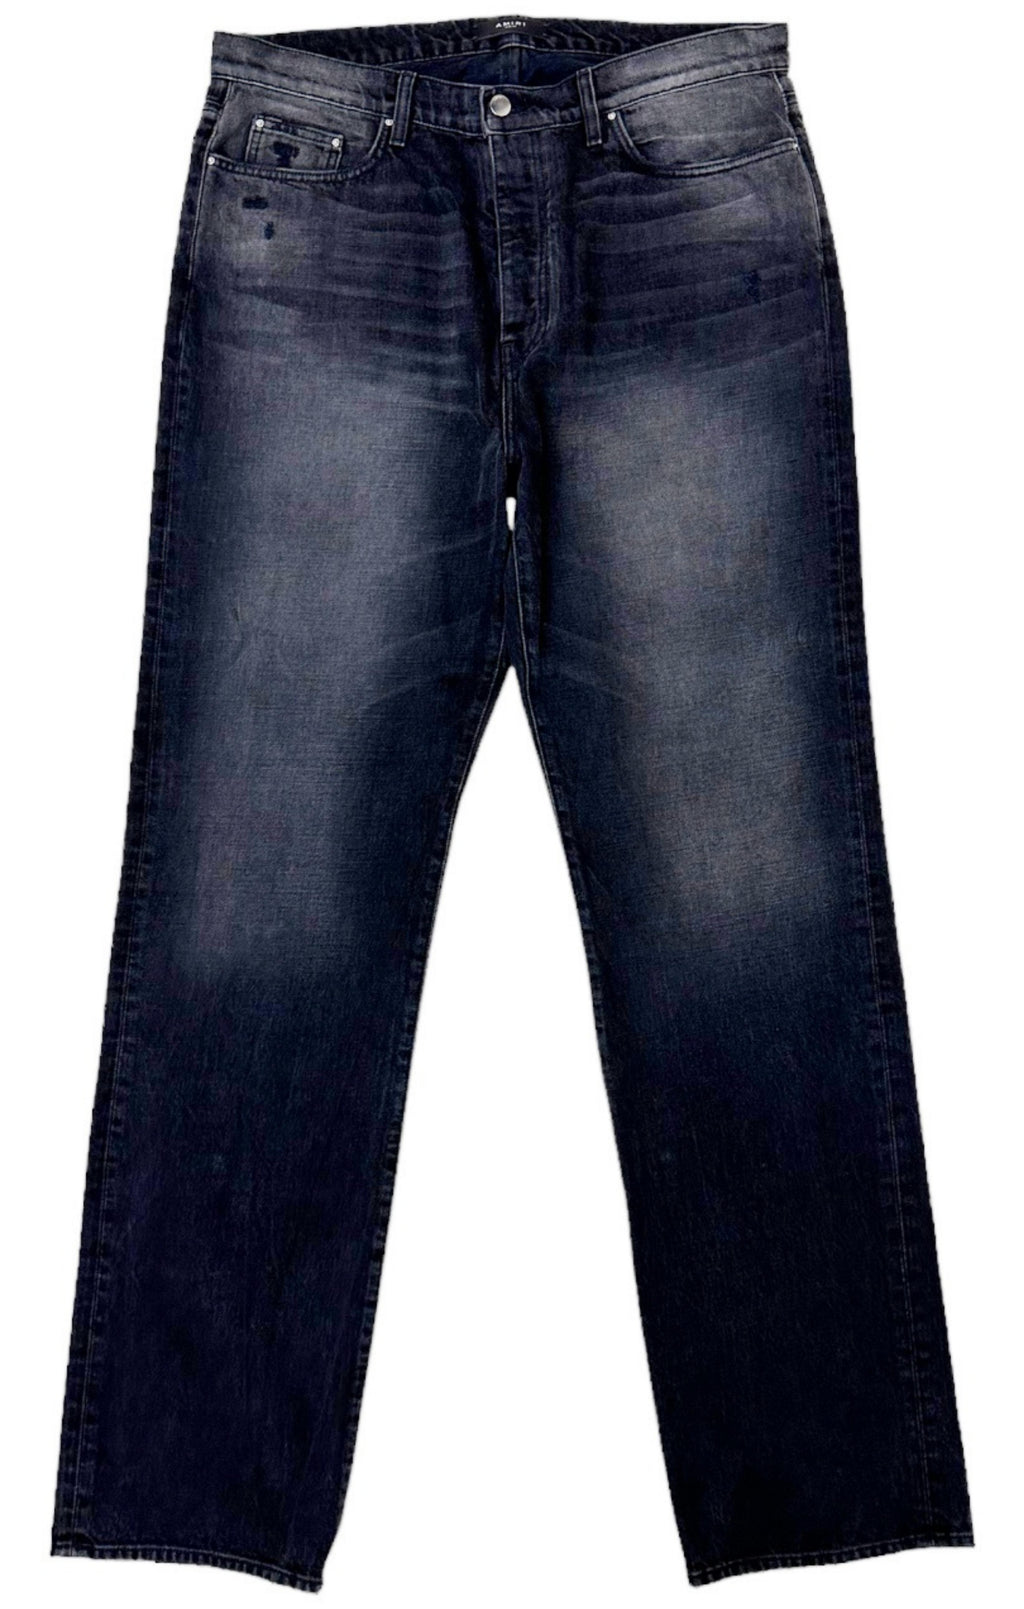 AMIRI Jeans Size: 38 / Fit like 2XL